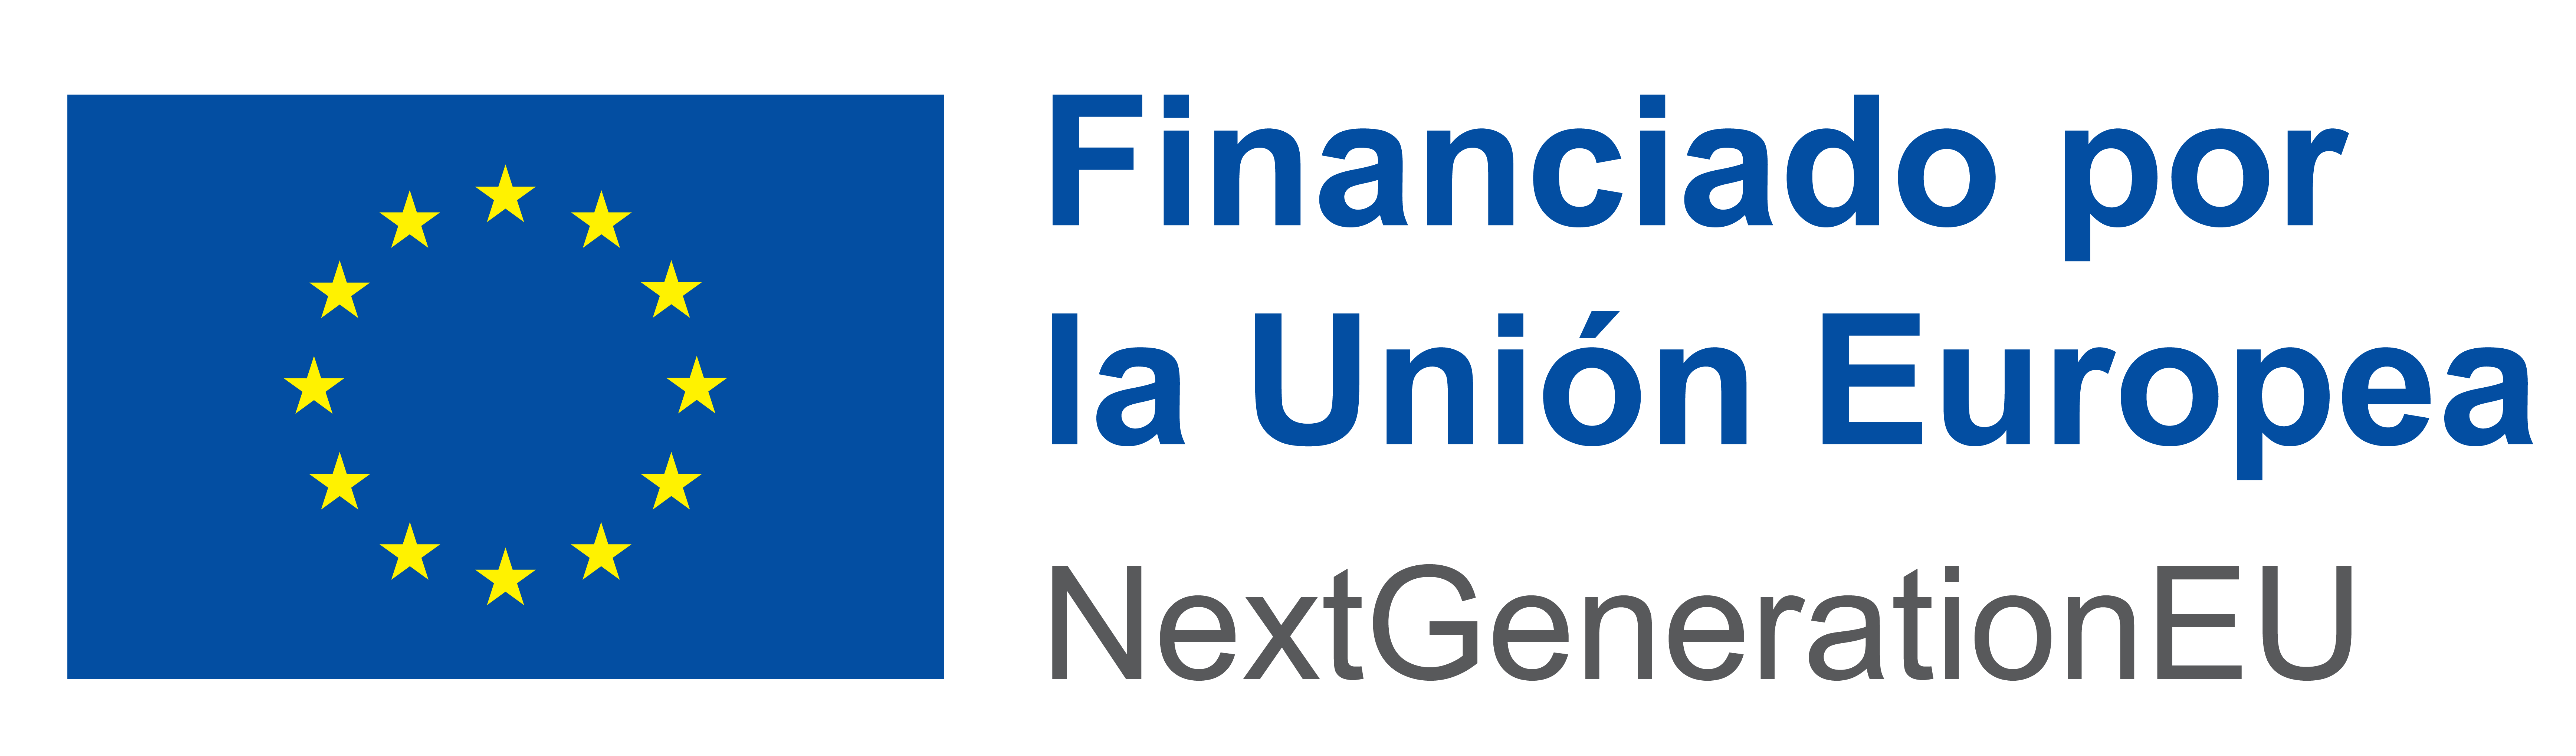 Logotipo de NextGenerationEU con bandera de la Unión Europea y texto "Financiado por la Unión Europea" indicando la contribución europea a proyectos de rehabilitación de edificios y desarrollo sostenible.